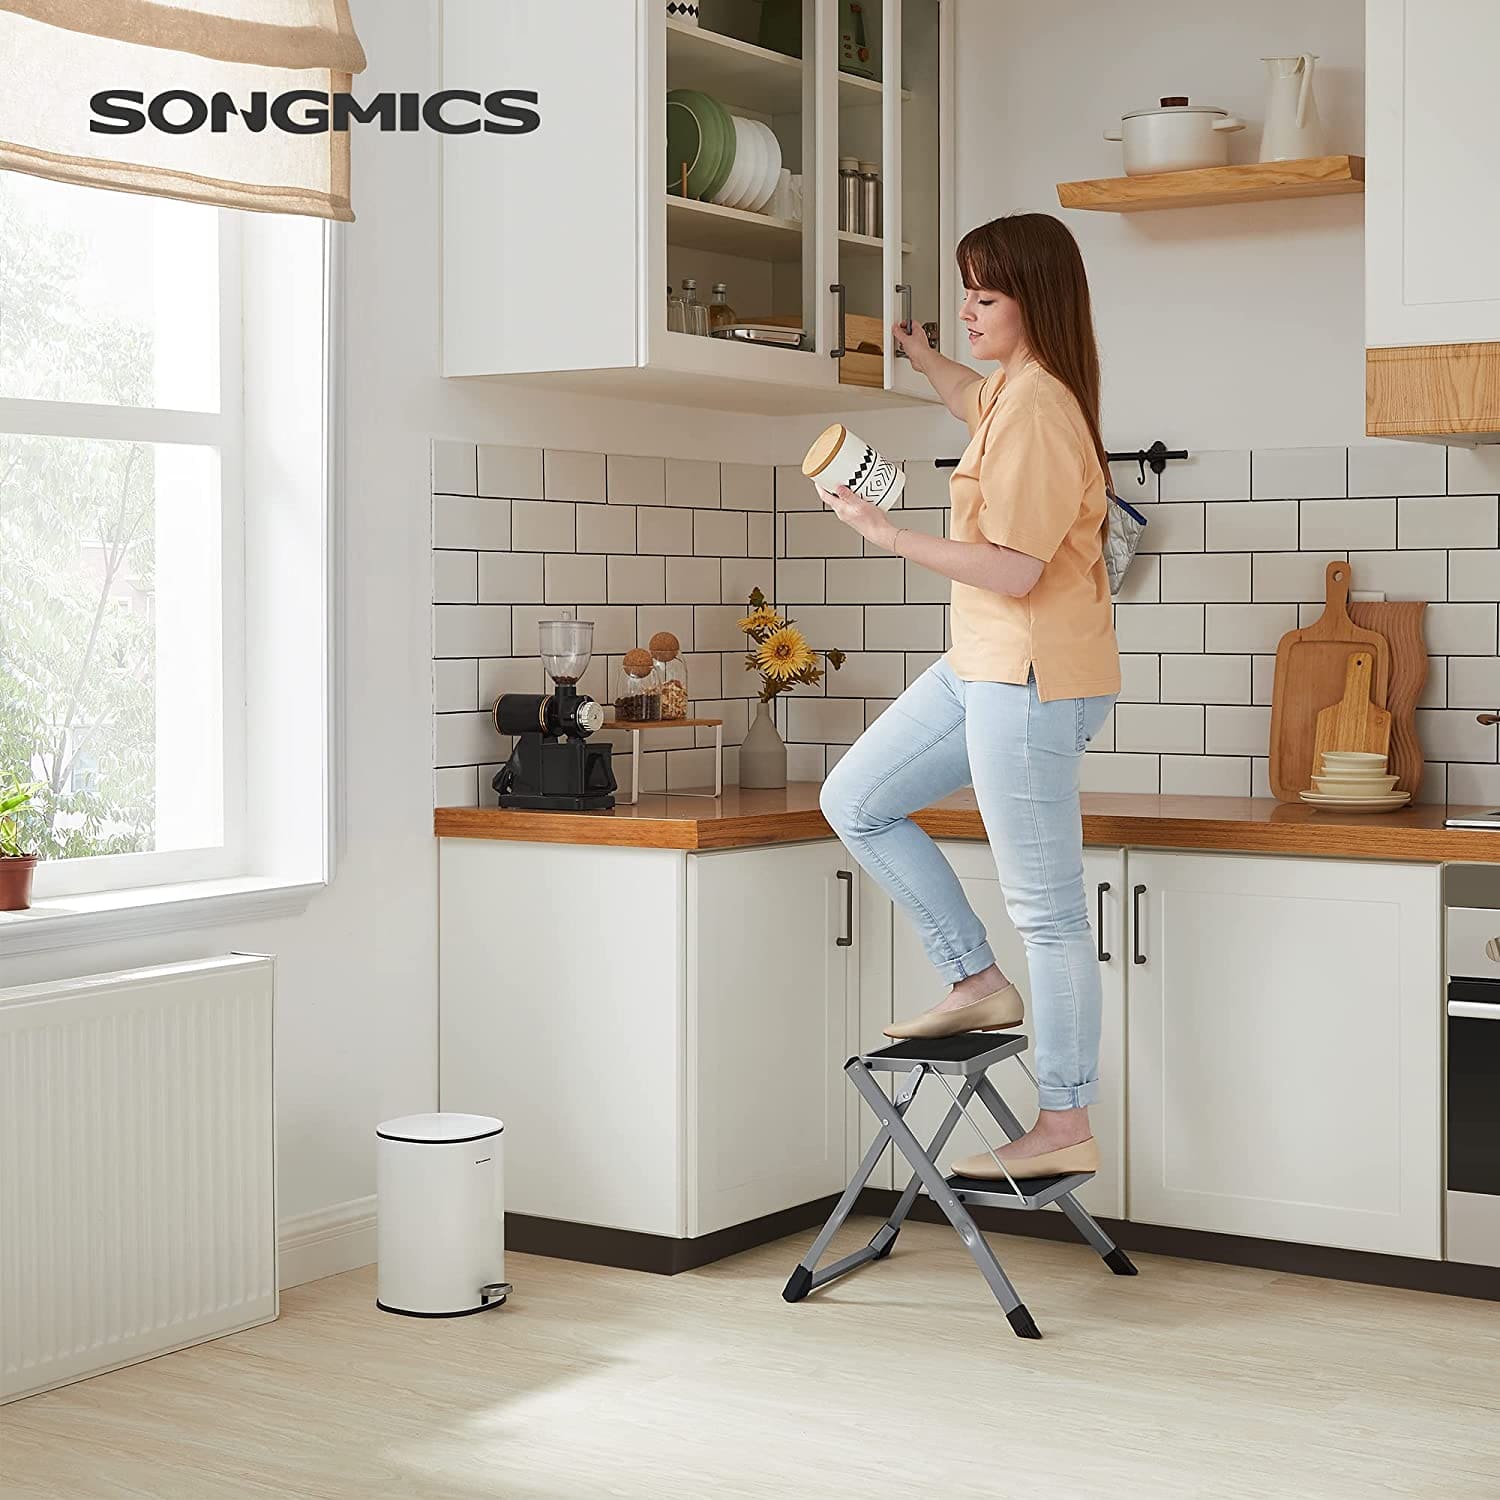 SONGMICS - Klapptritt mit 2 Stufen für Küche